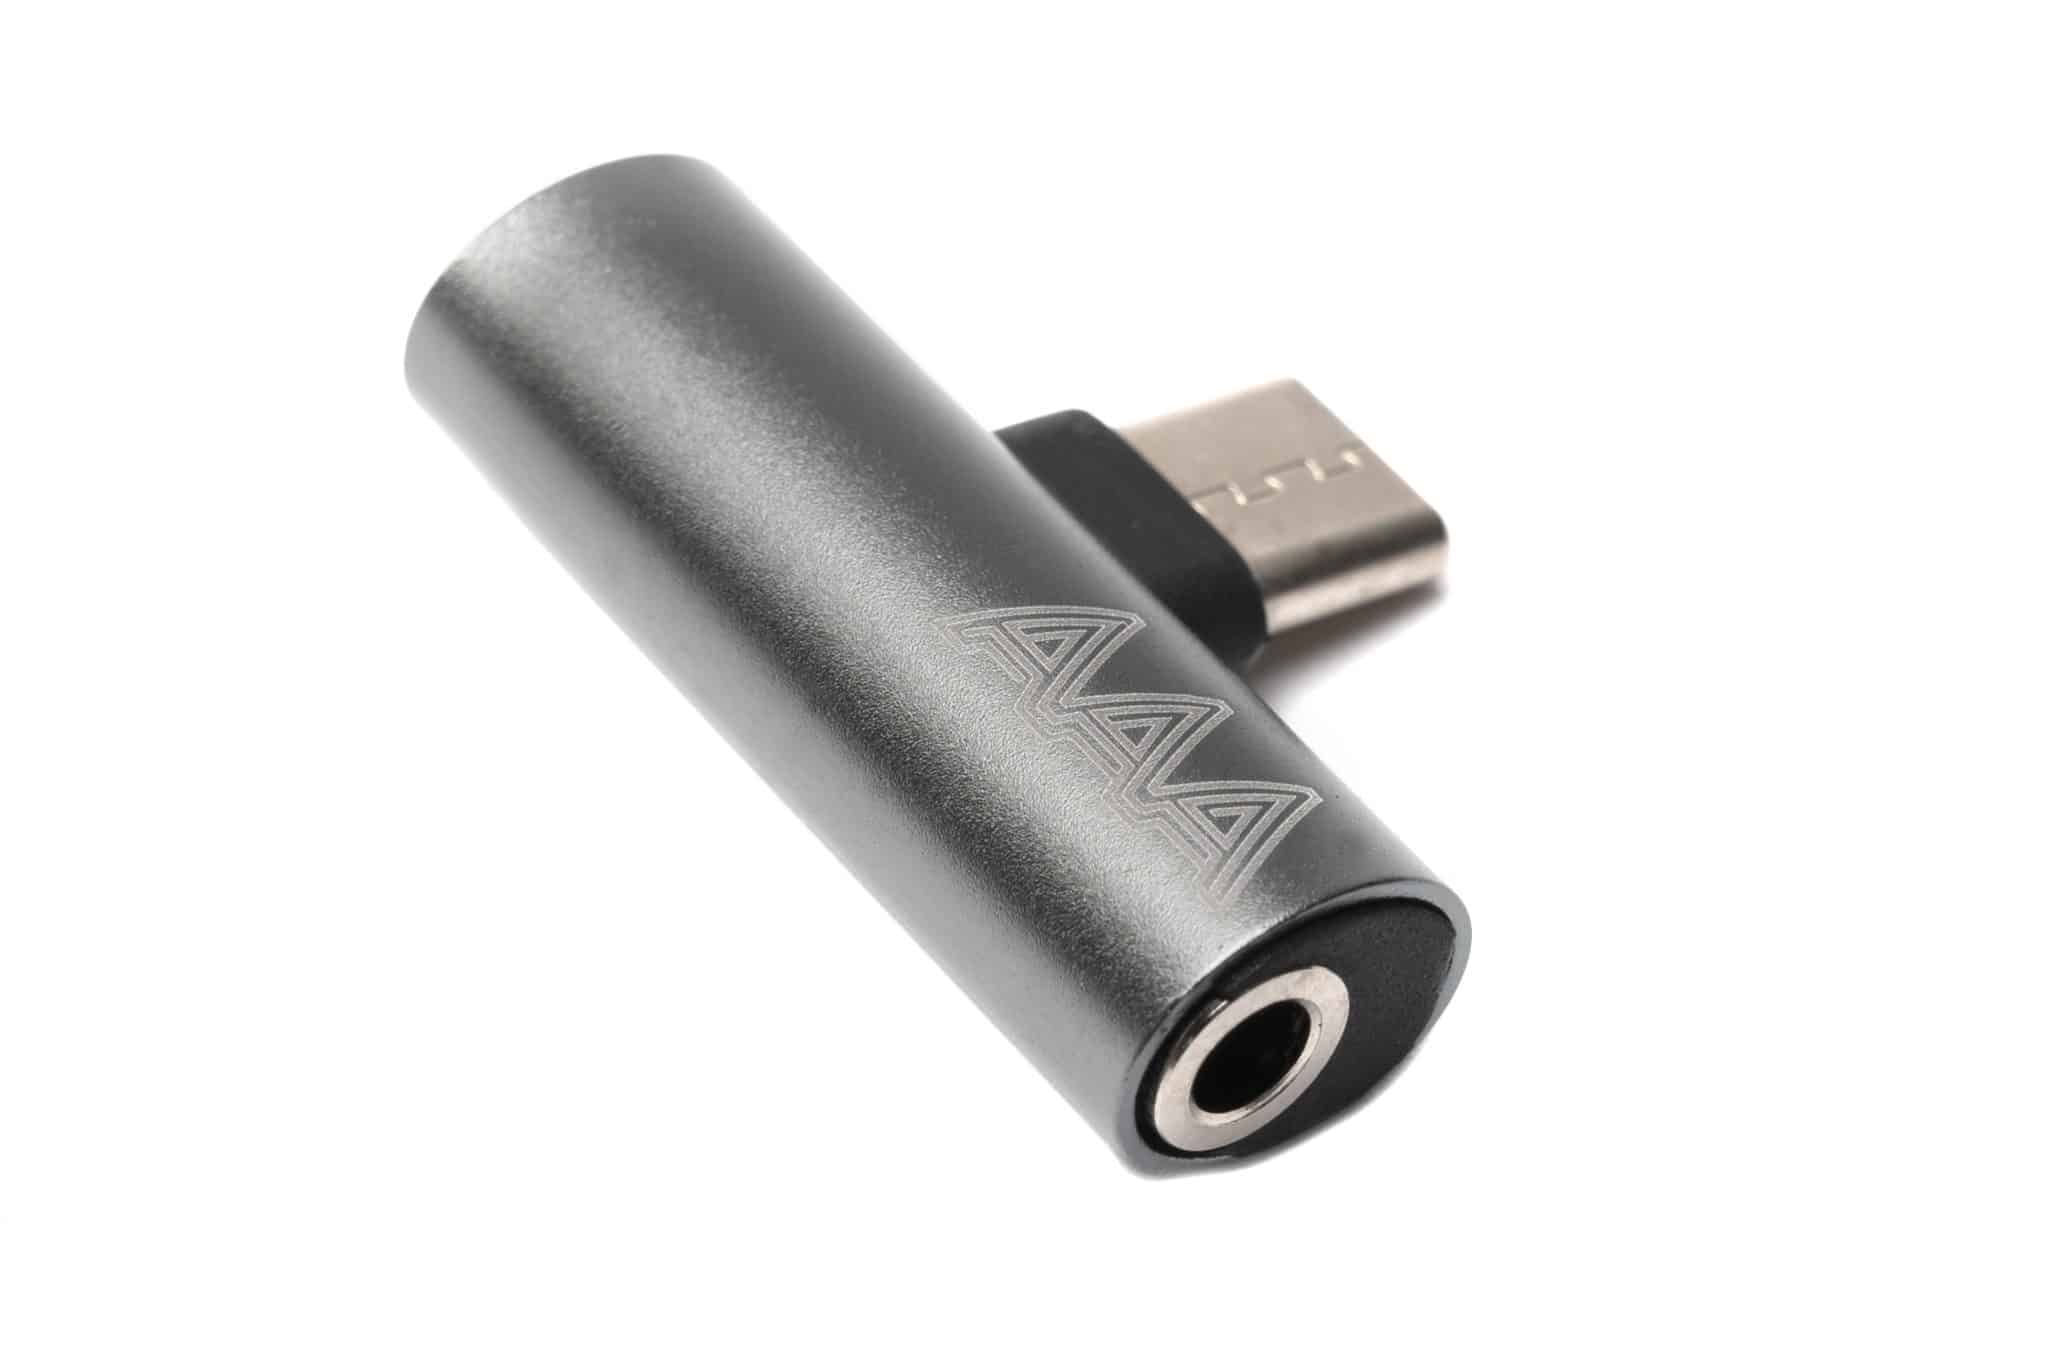 Adattatore aux line-in: da jack 3,5 mm a USB-C